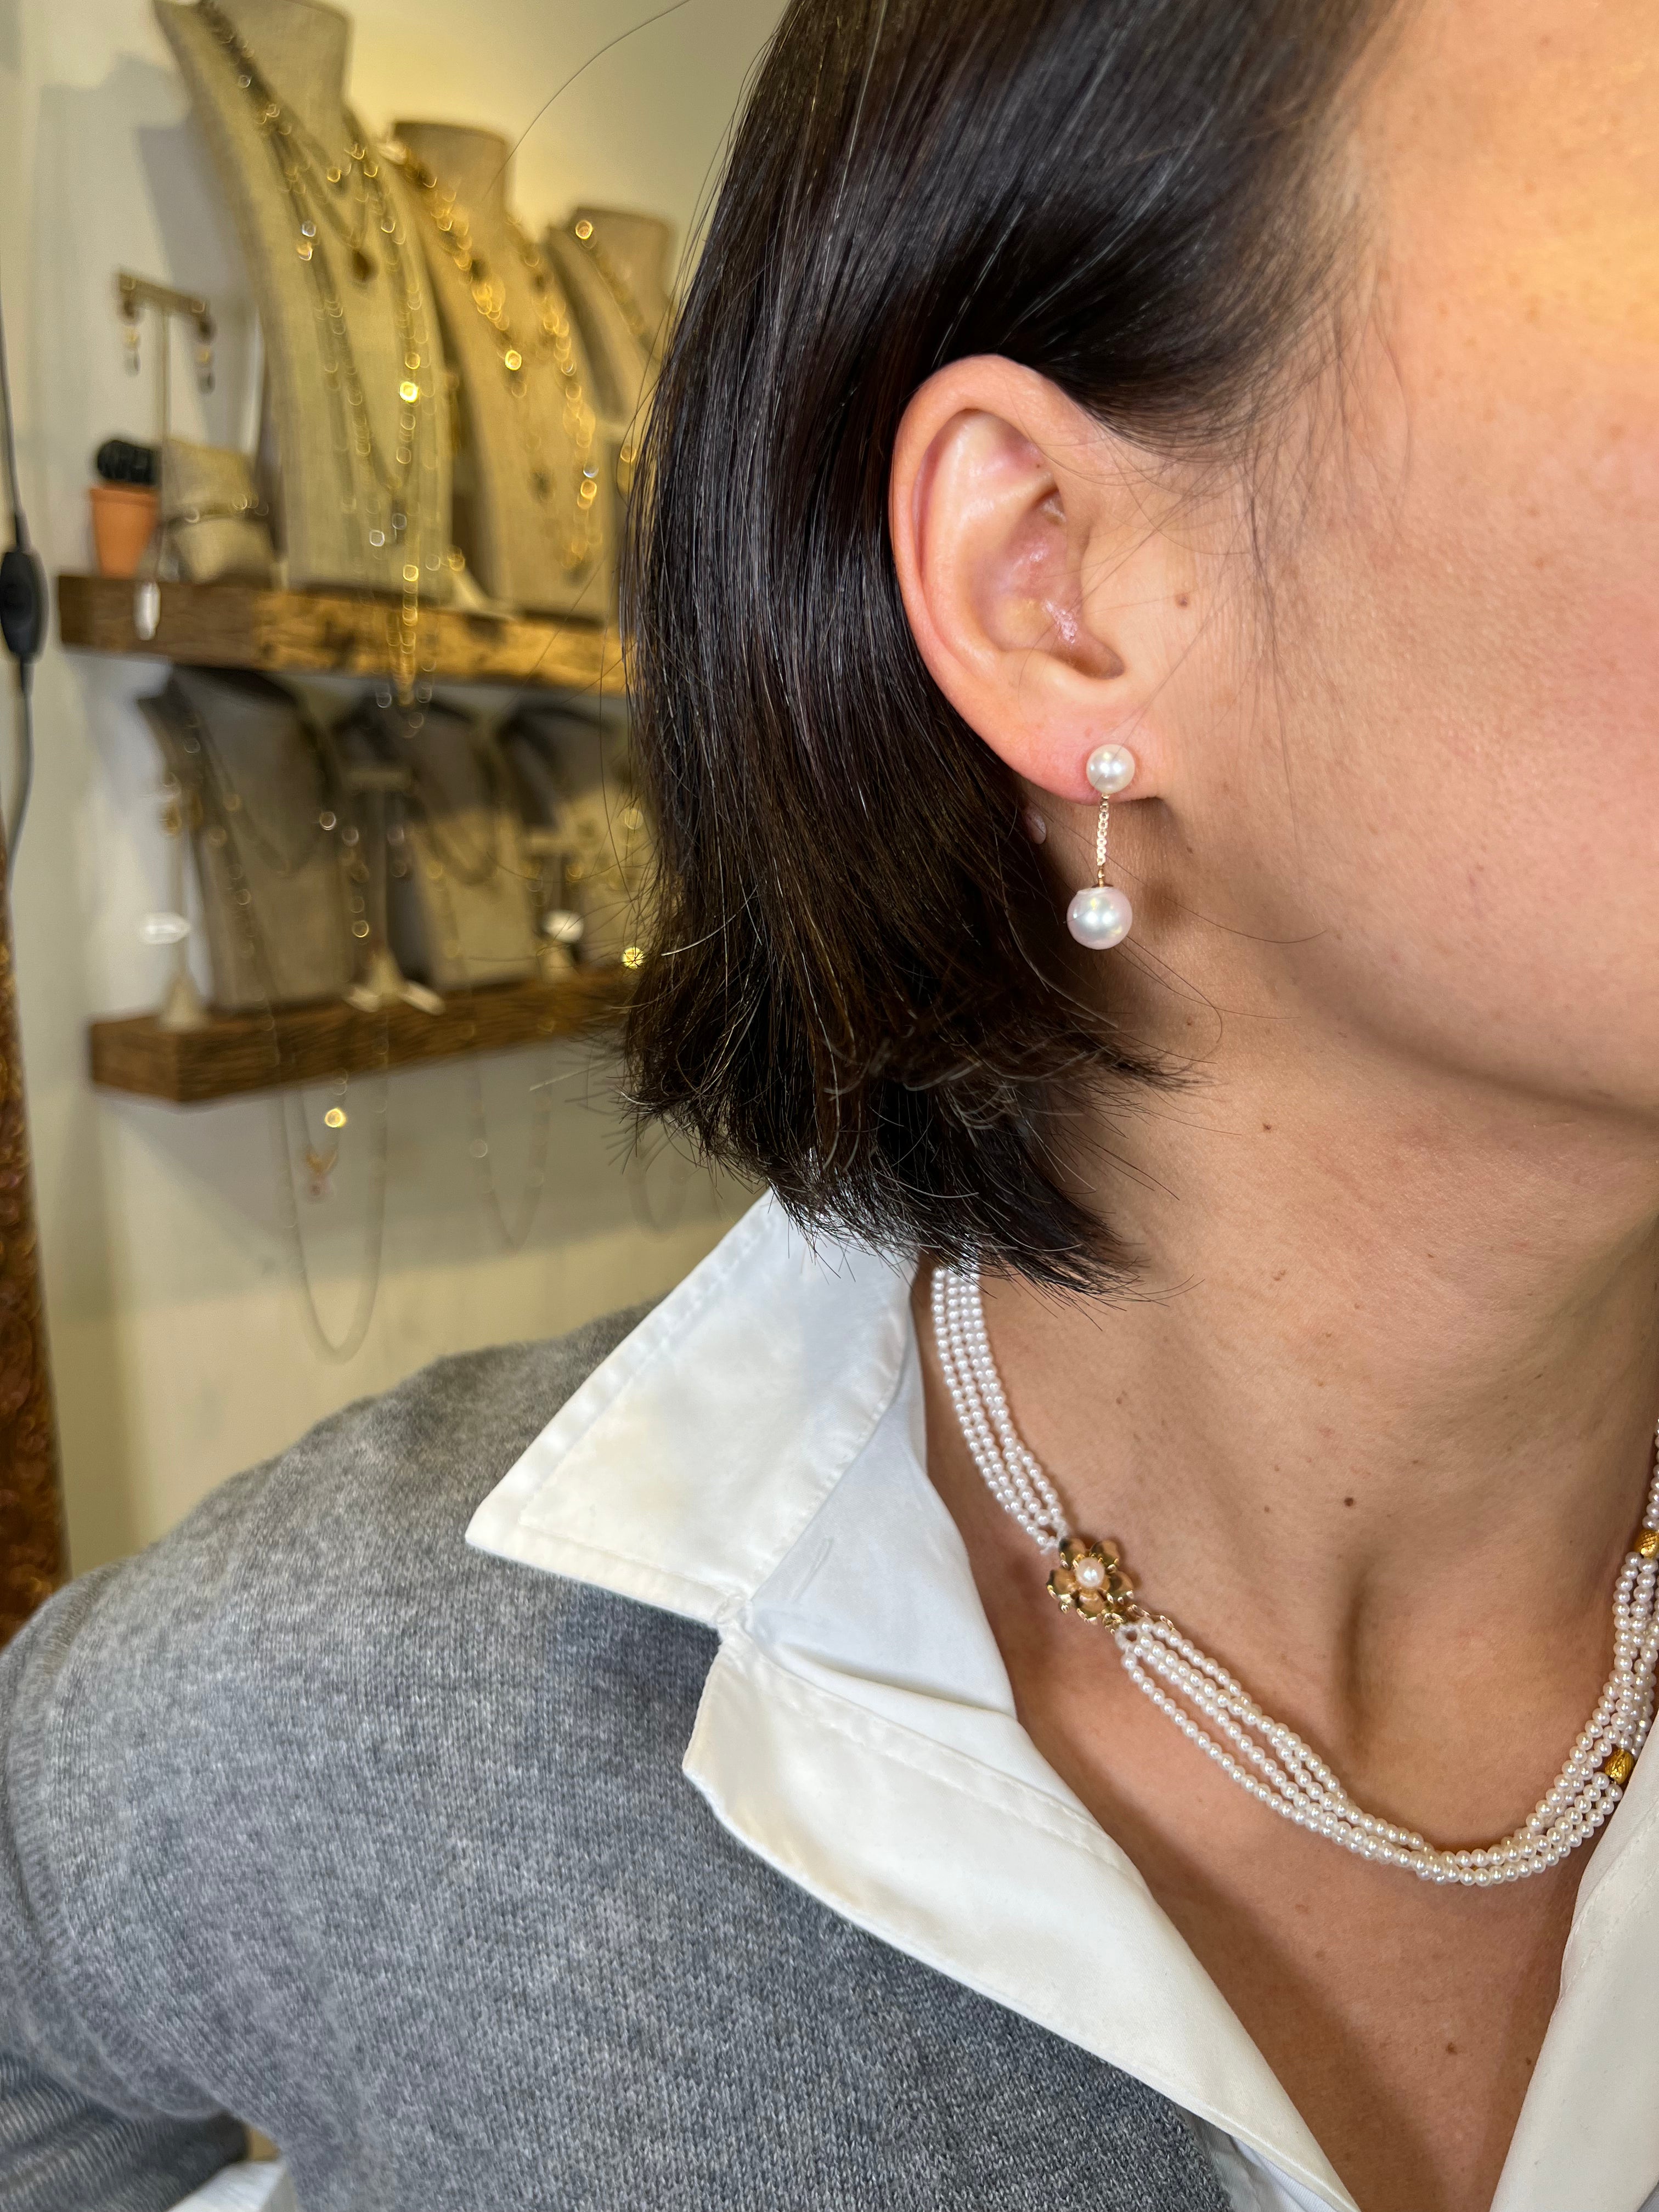 Double Take Pearl Drop Earrings in 14k Gold